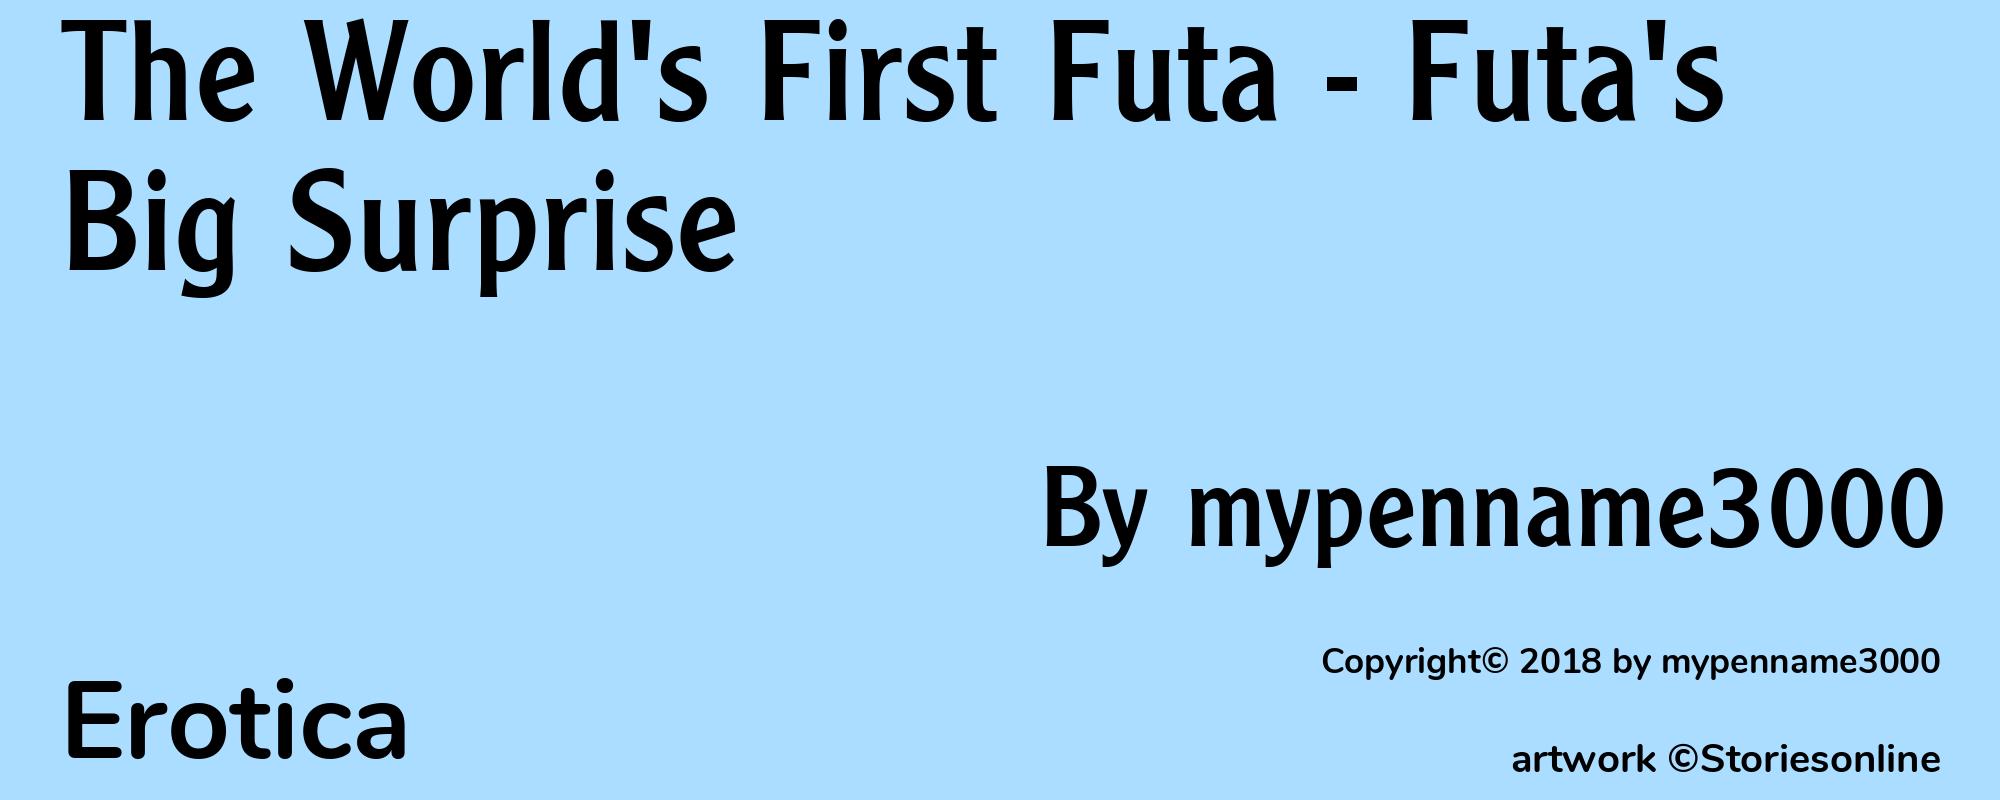 The World's First Futa - Futa's Big Surprise - Cover